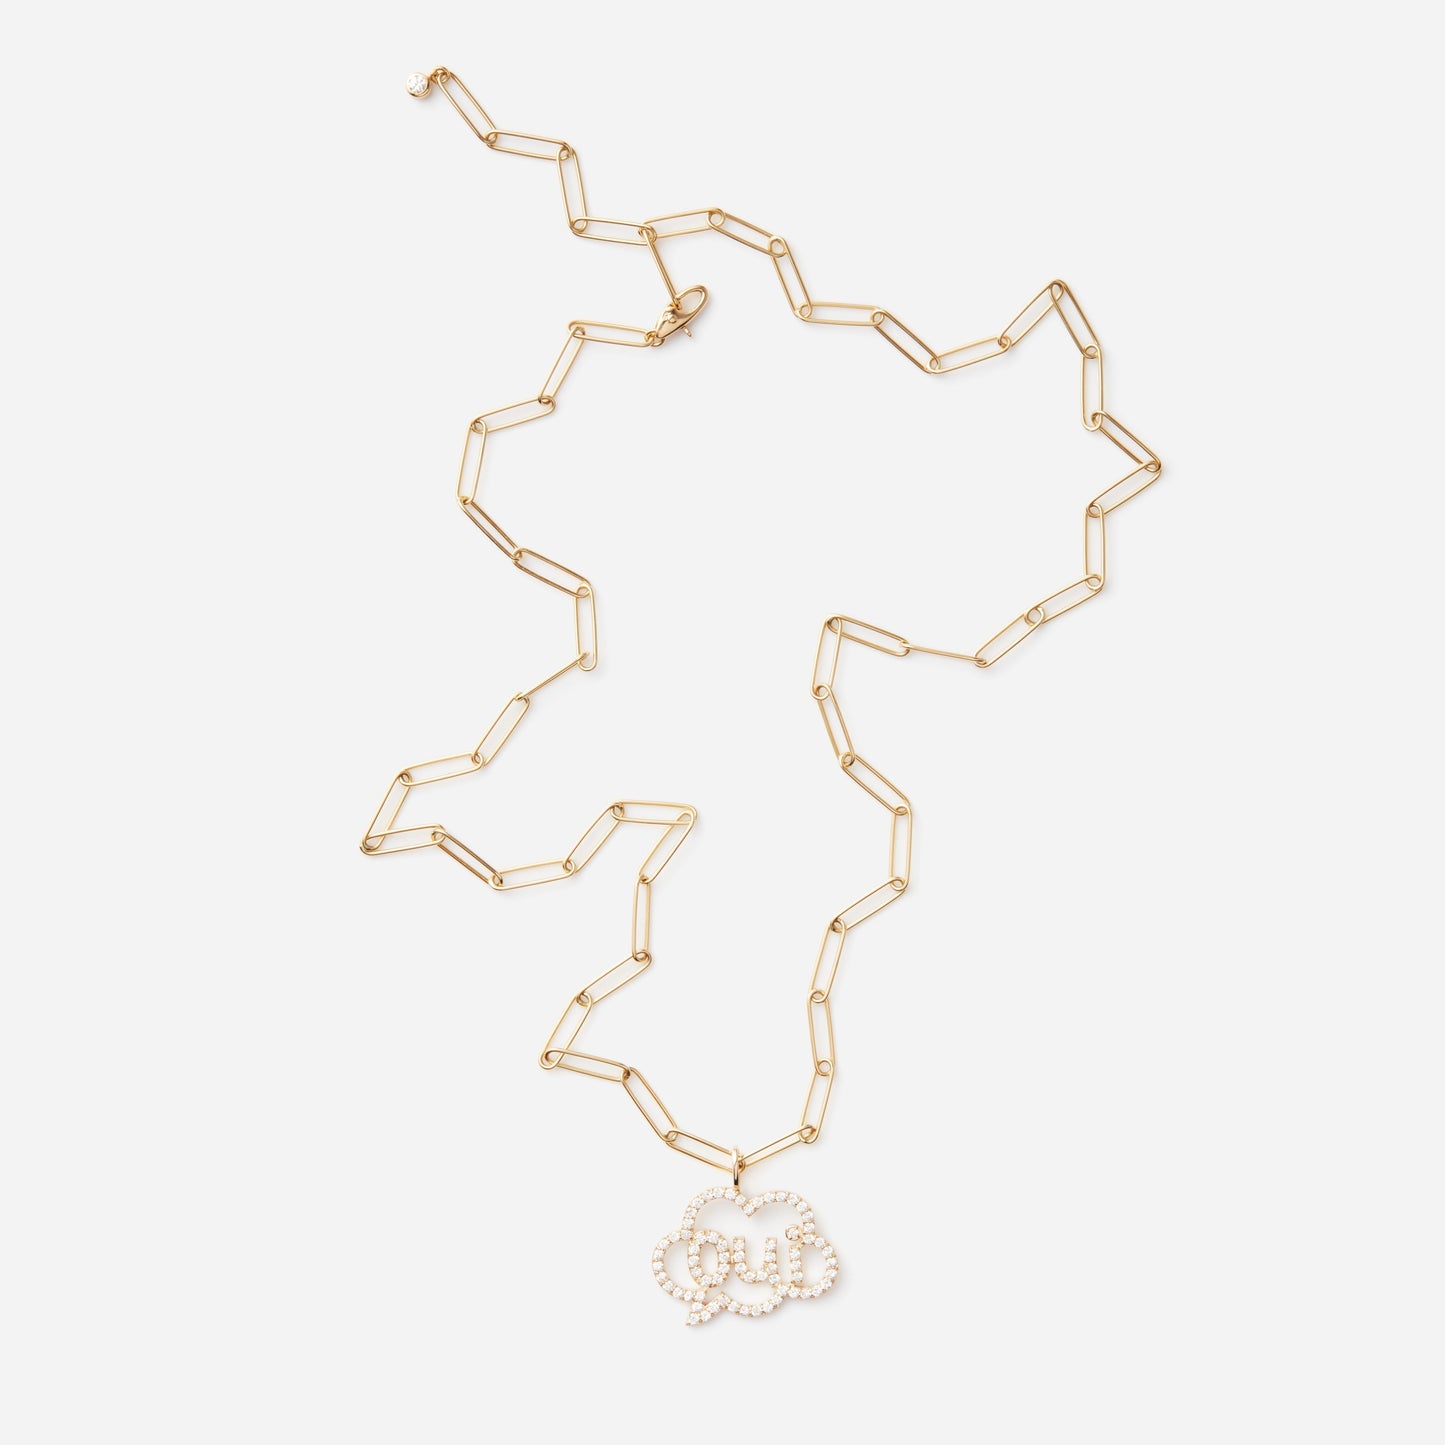 Chain Necklace"Clip"